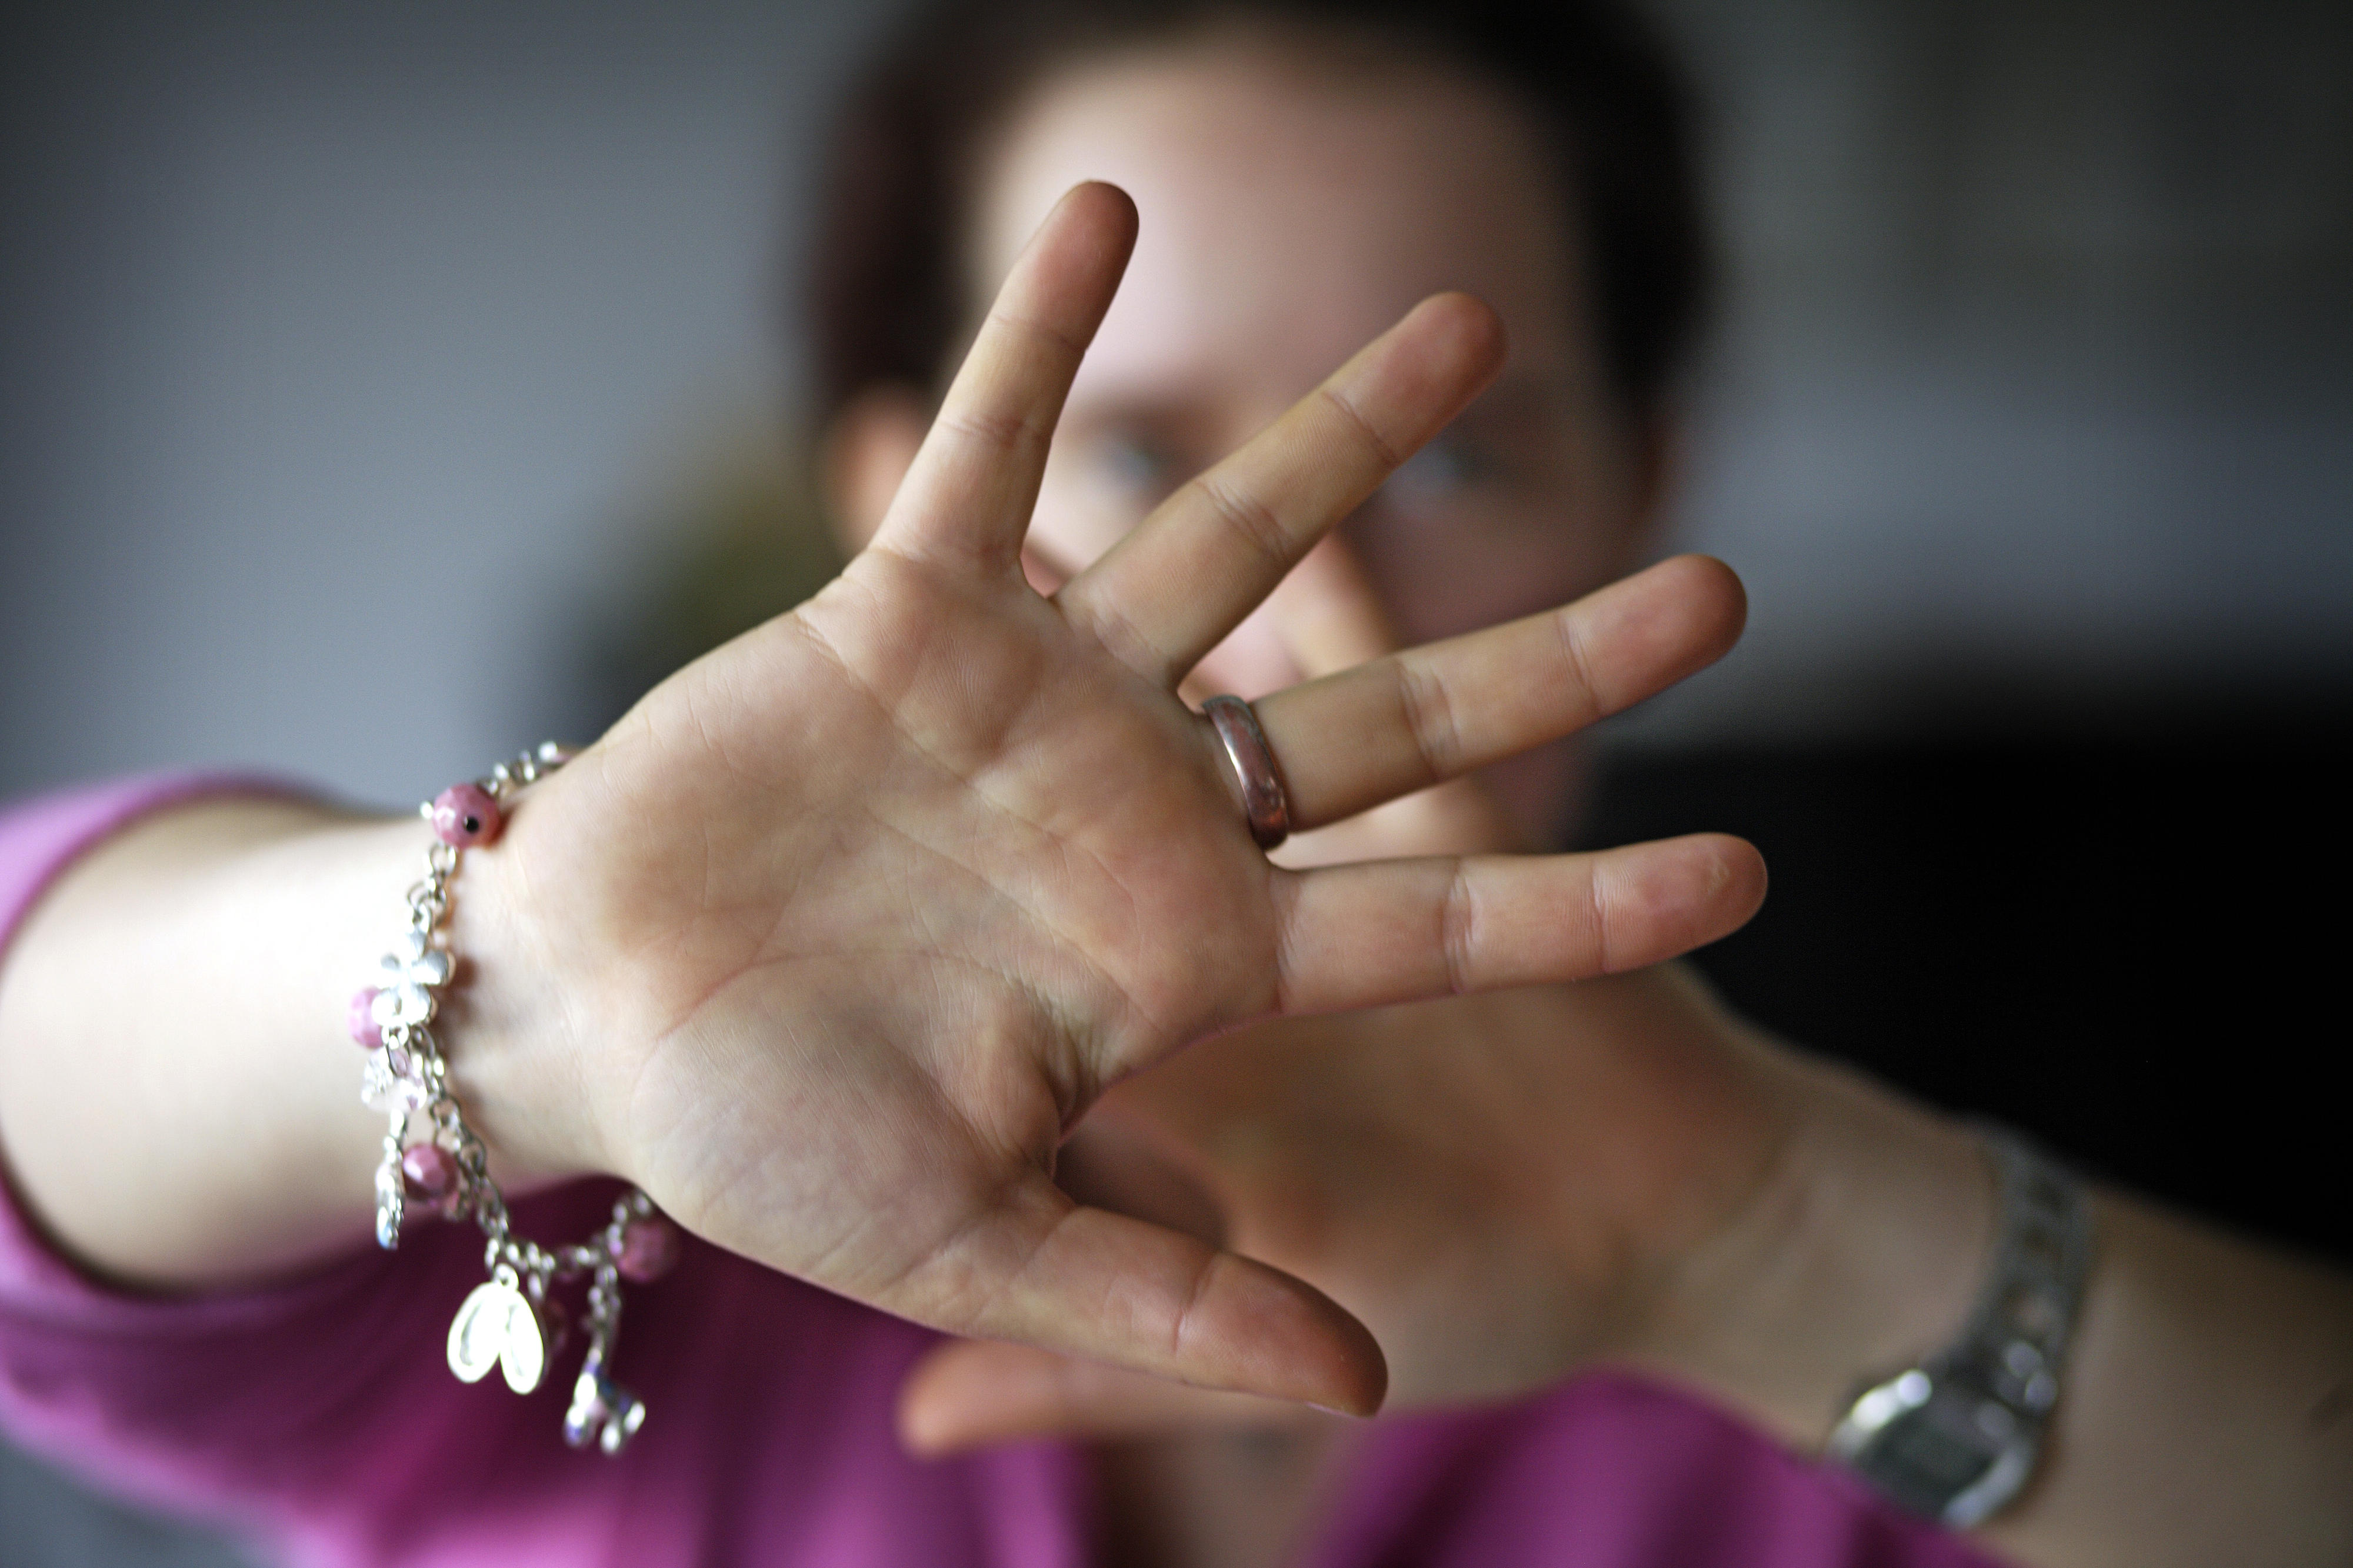 Symbolfoto: Eine Frau hält abwehrend ihre Hände vor ihren Kopf um sich zu schützen